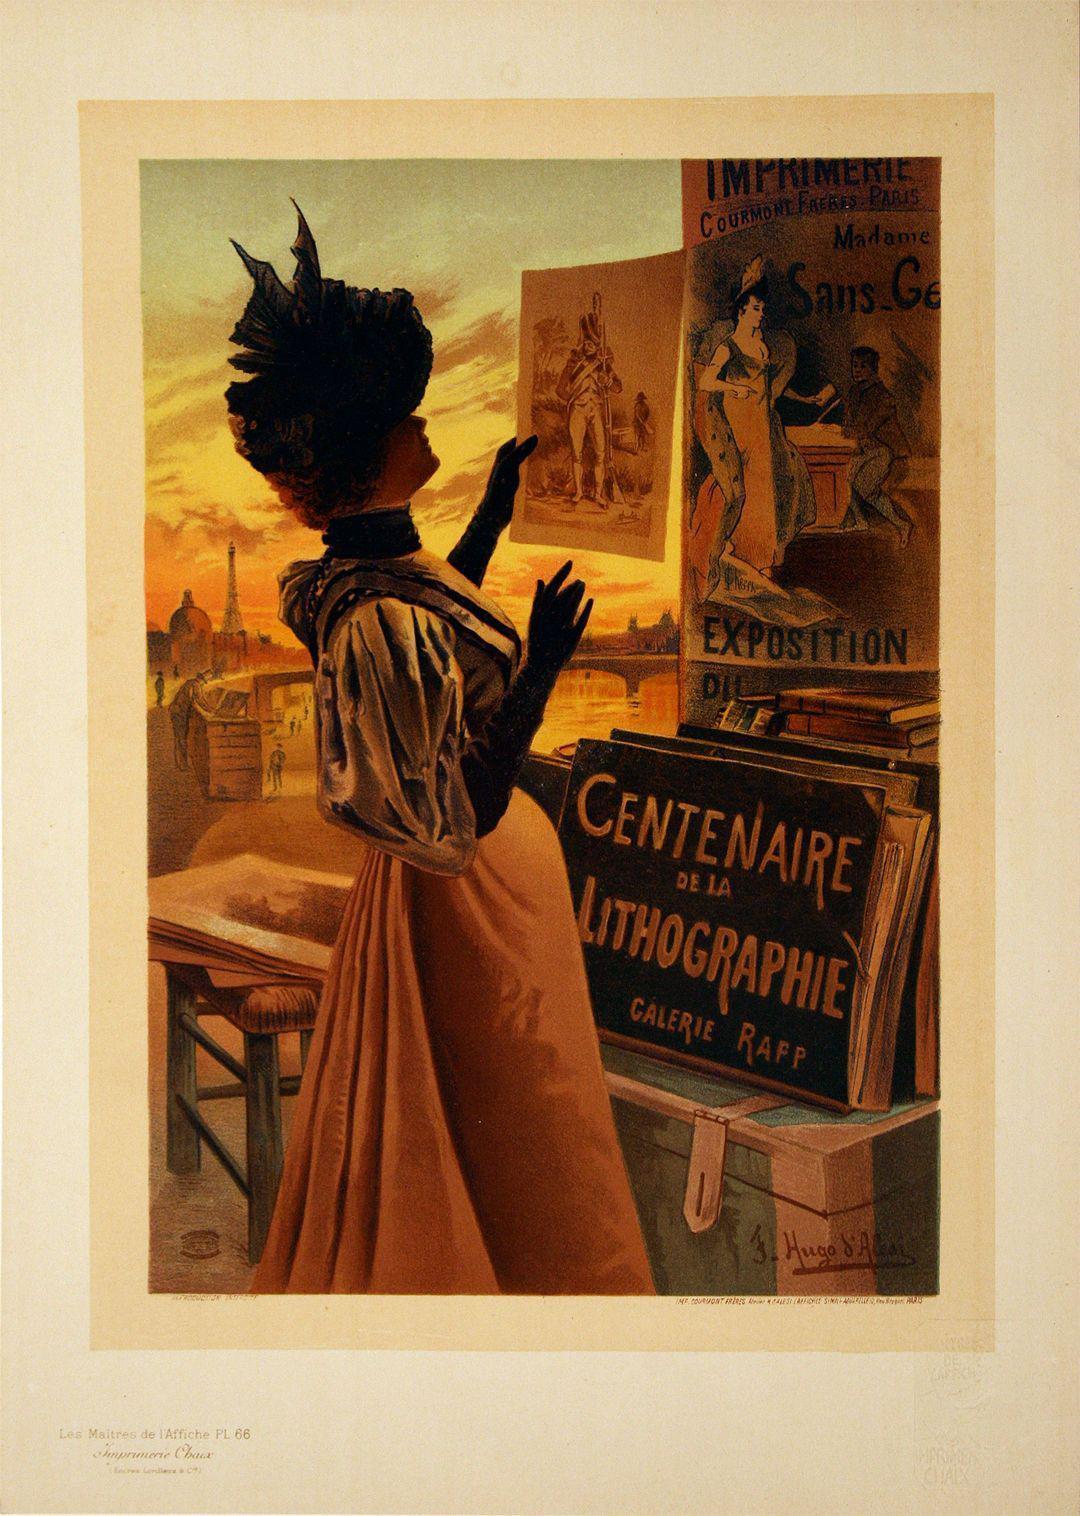 Original Maitres de L'Affiche Poster PL 66 Centenaire de Lithographie by Hugo d'Alesi